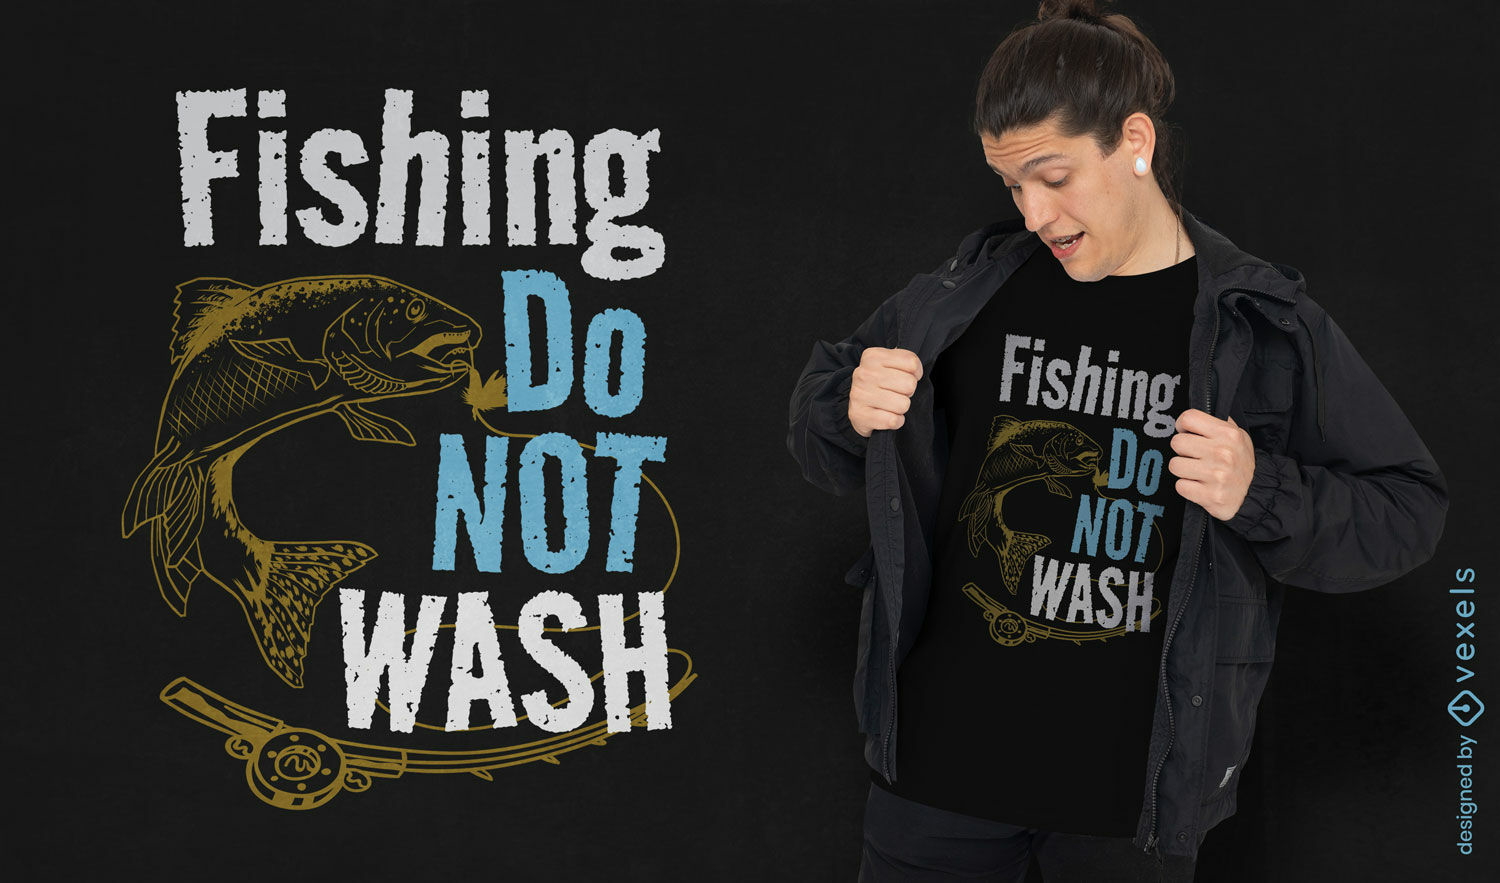 Fishing humorous quote t-shirt design